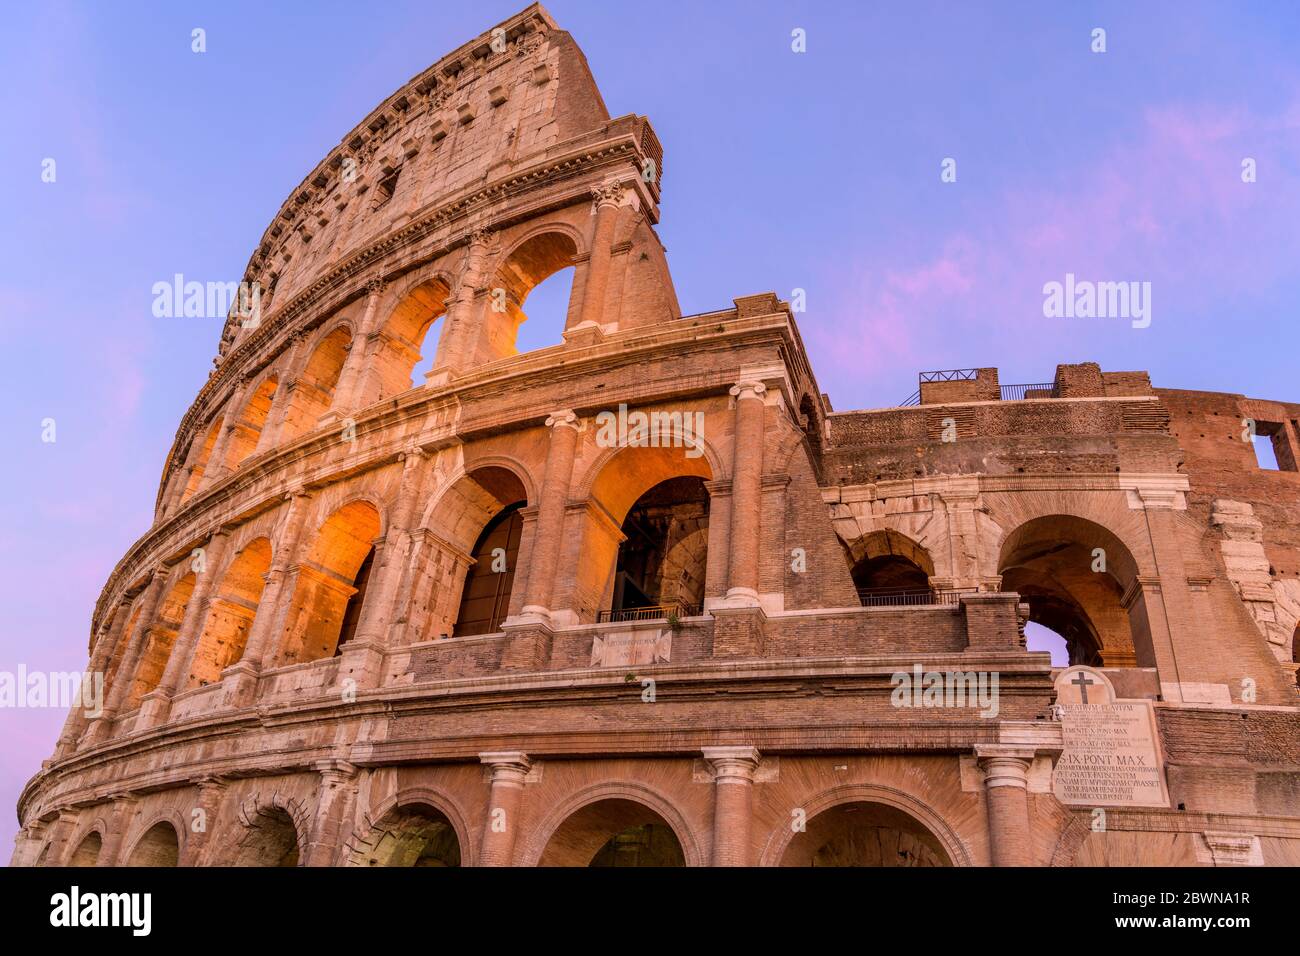 Sunset Colosseum - vue rapprochée sur la partie supérieure du mur extérieur ouest du Colisée, avec quelques plaques de marbre latines. Rome, Italie. Banque D'Images